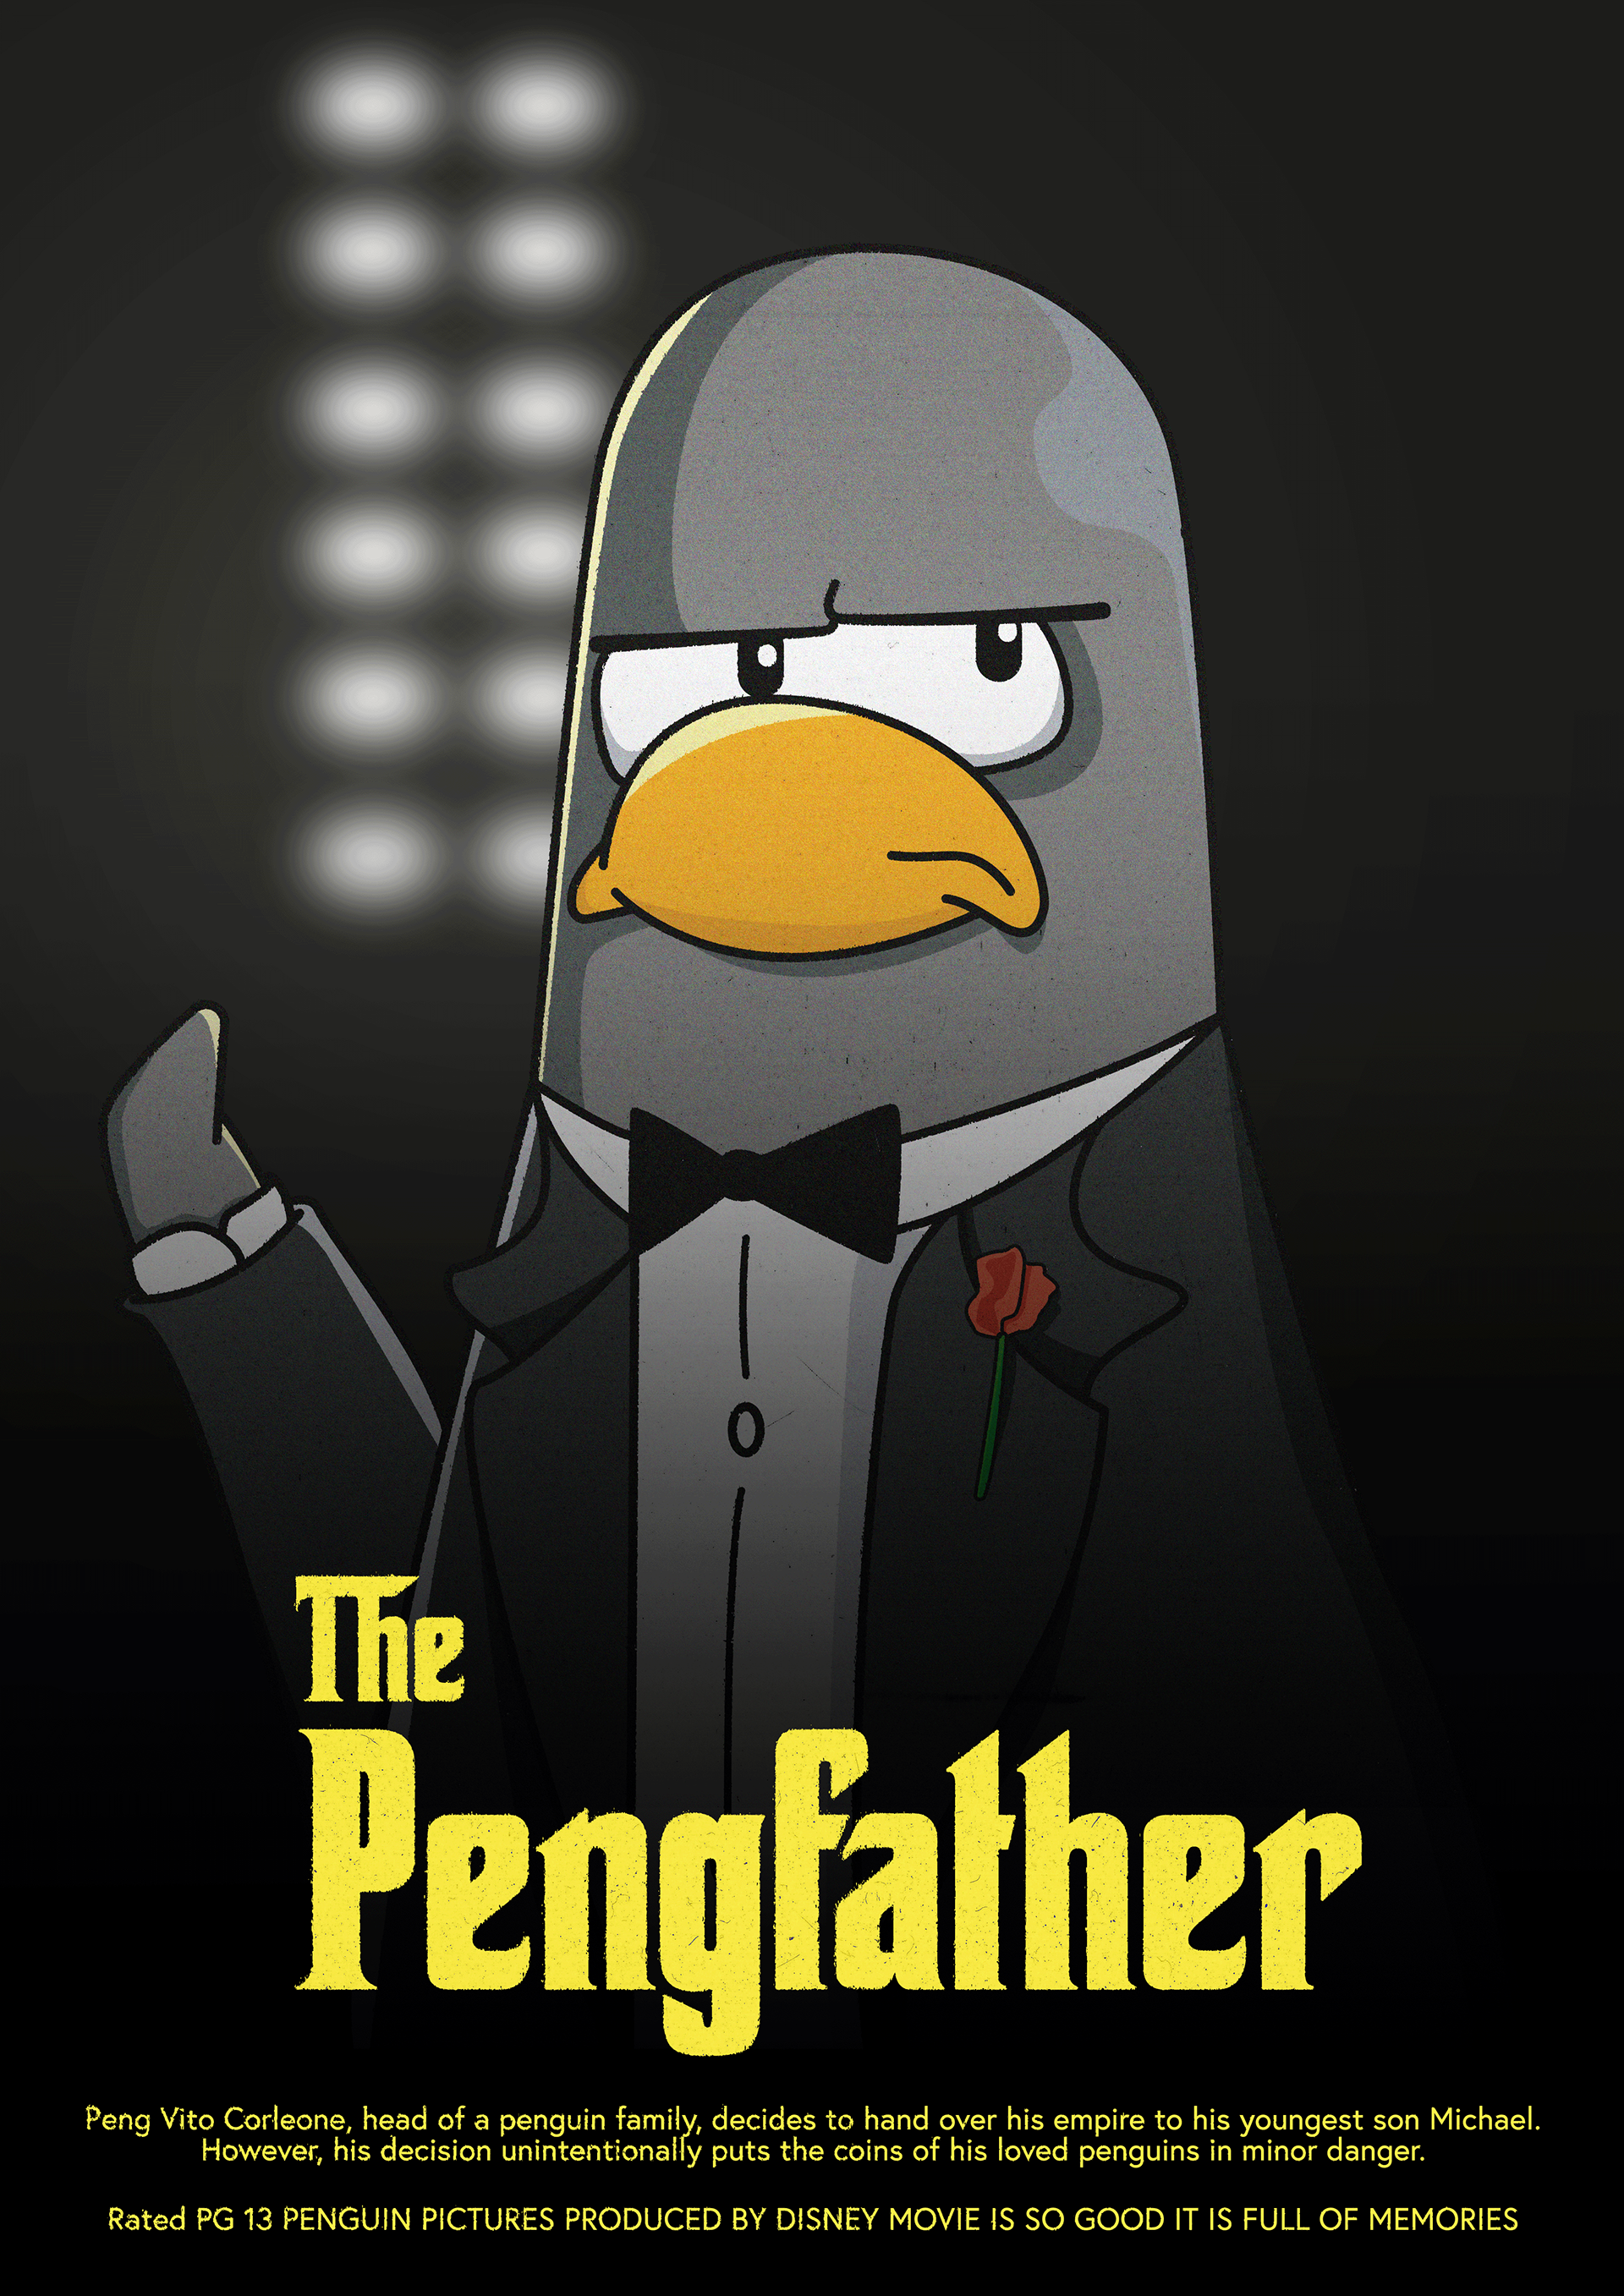 Emir Arı - The Pengfather